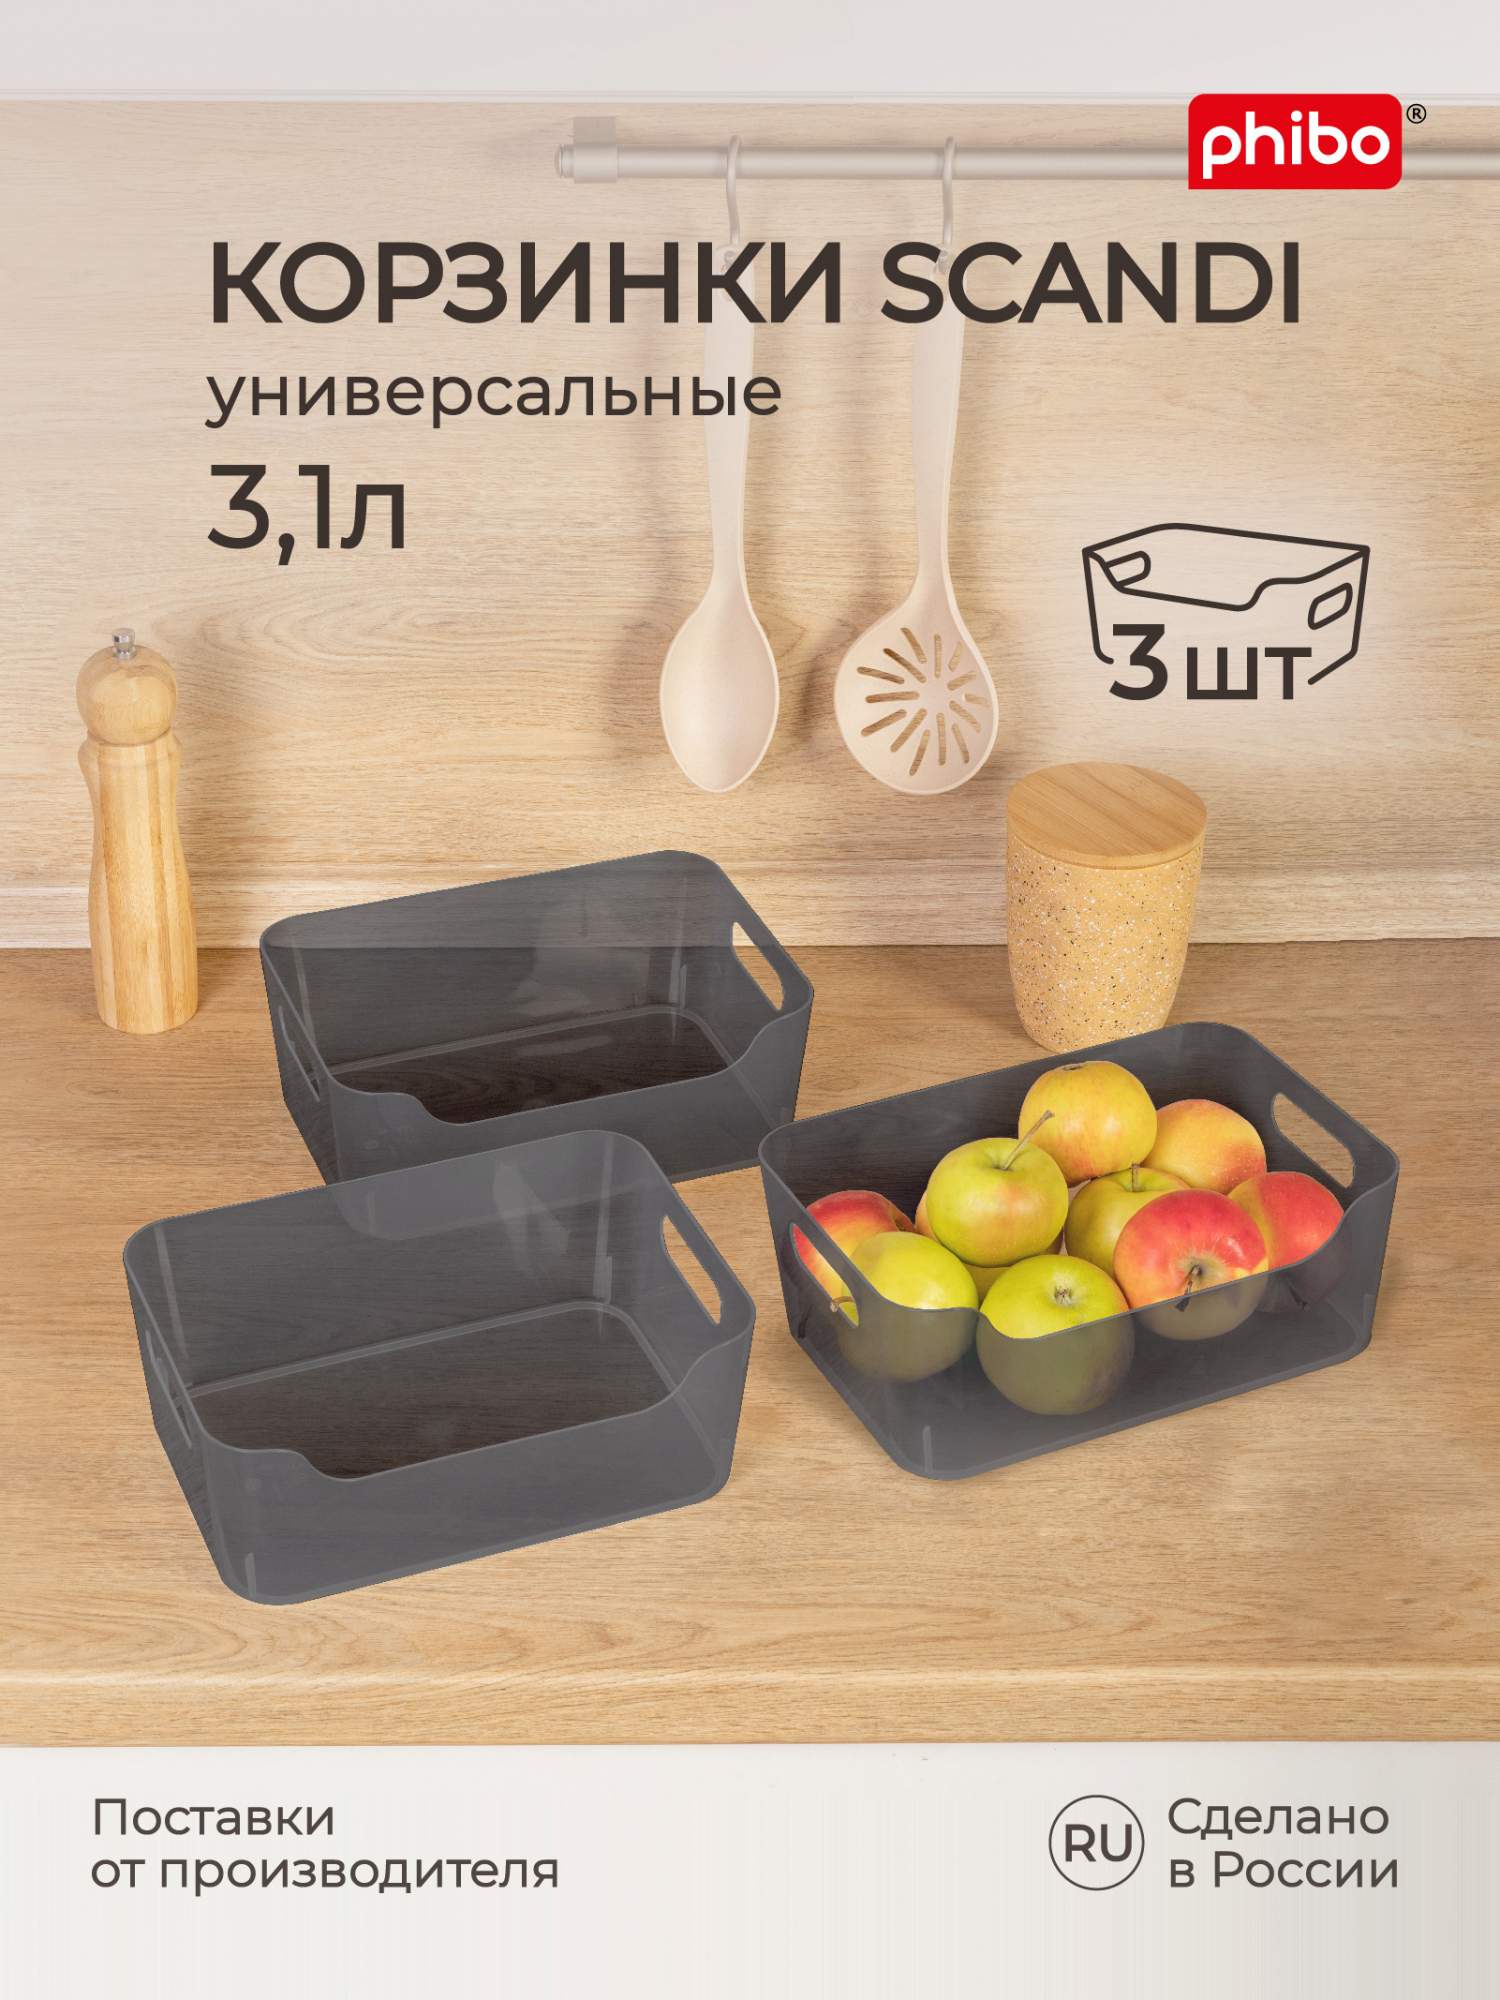 Комплект корзинок универсальных для холодильника Scandi 3,1 л, 3 шт (черный)